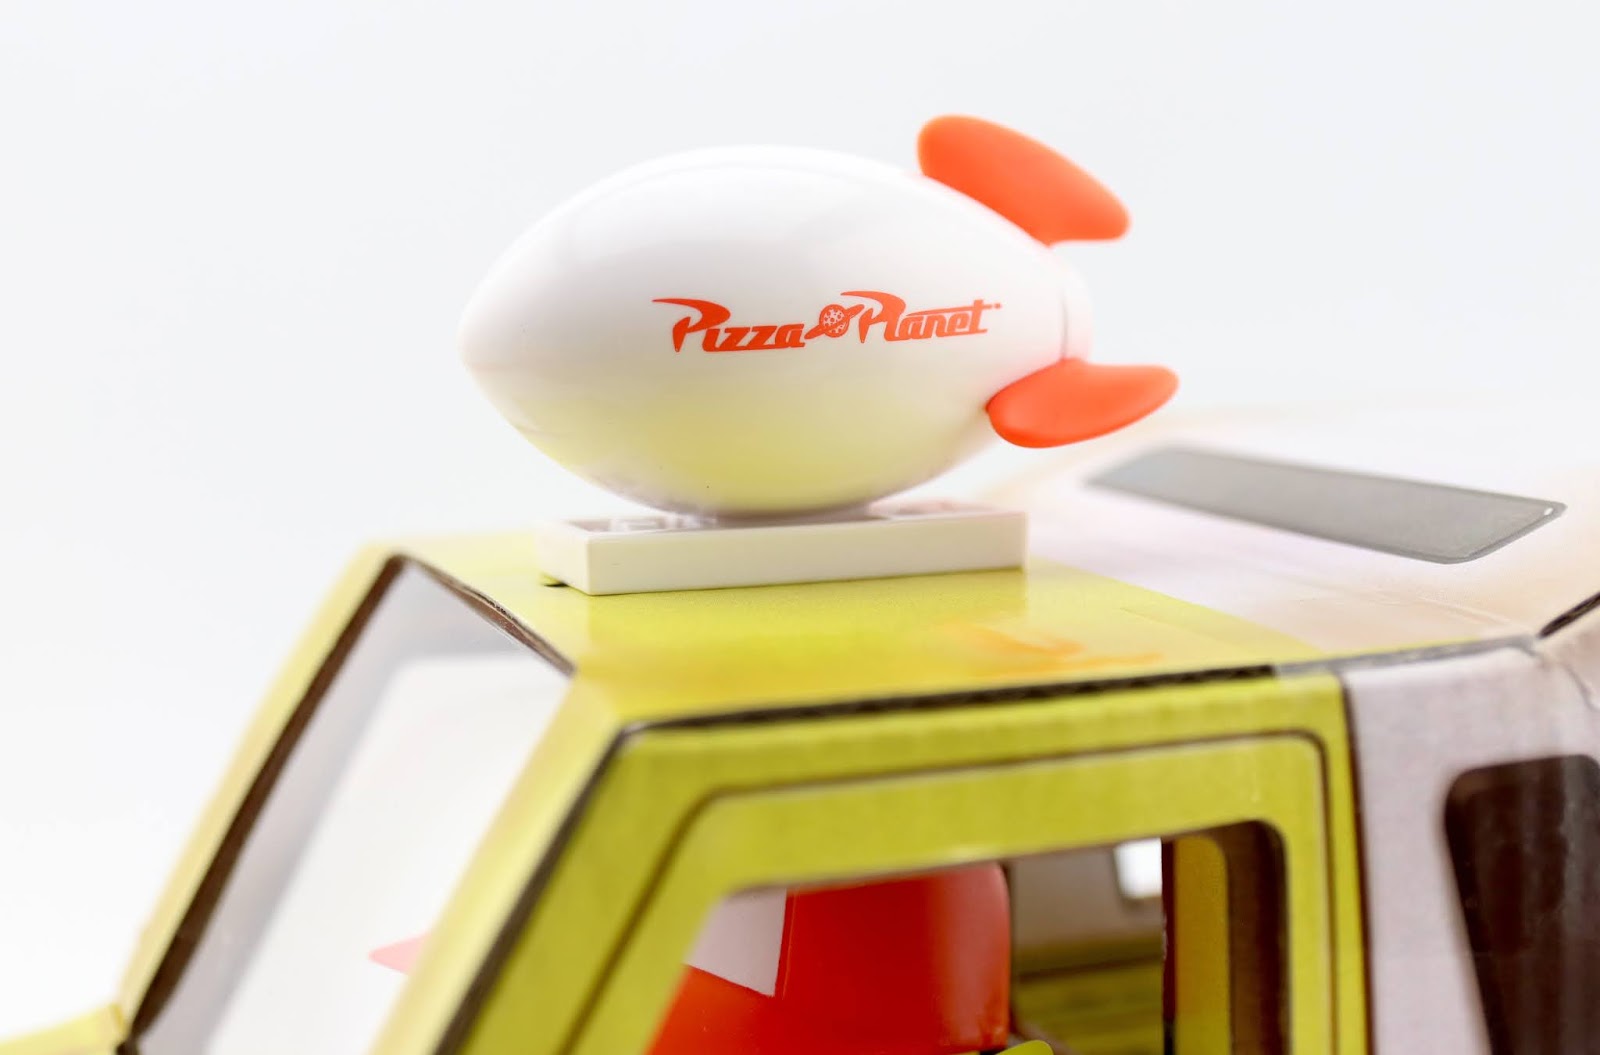 Toy Story Mattel Pixar Alien Remix Pizza Planet Truck Driver Comic-Con 2020 Exclusive